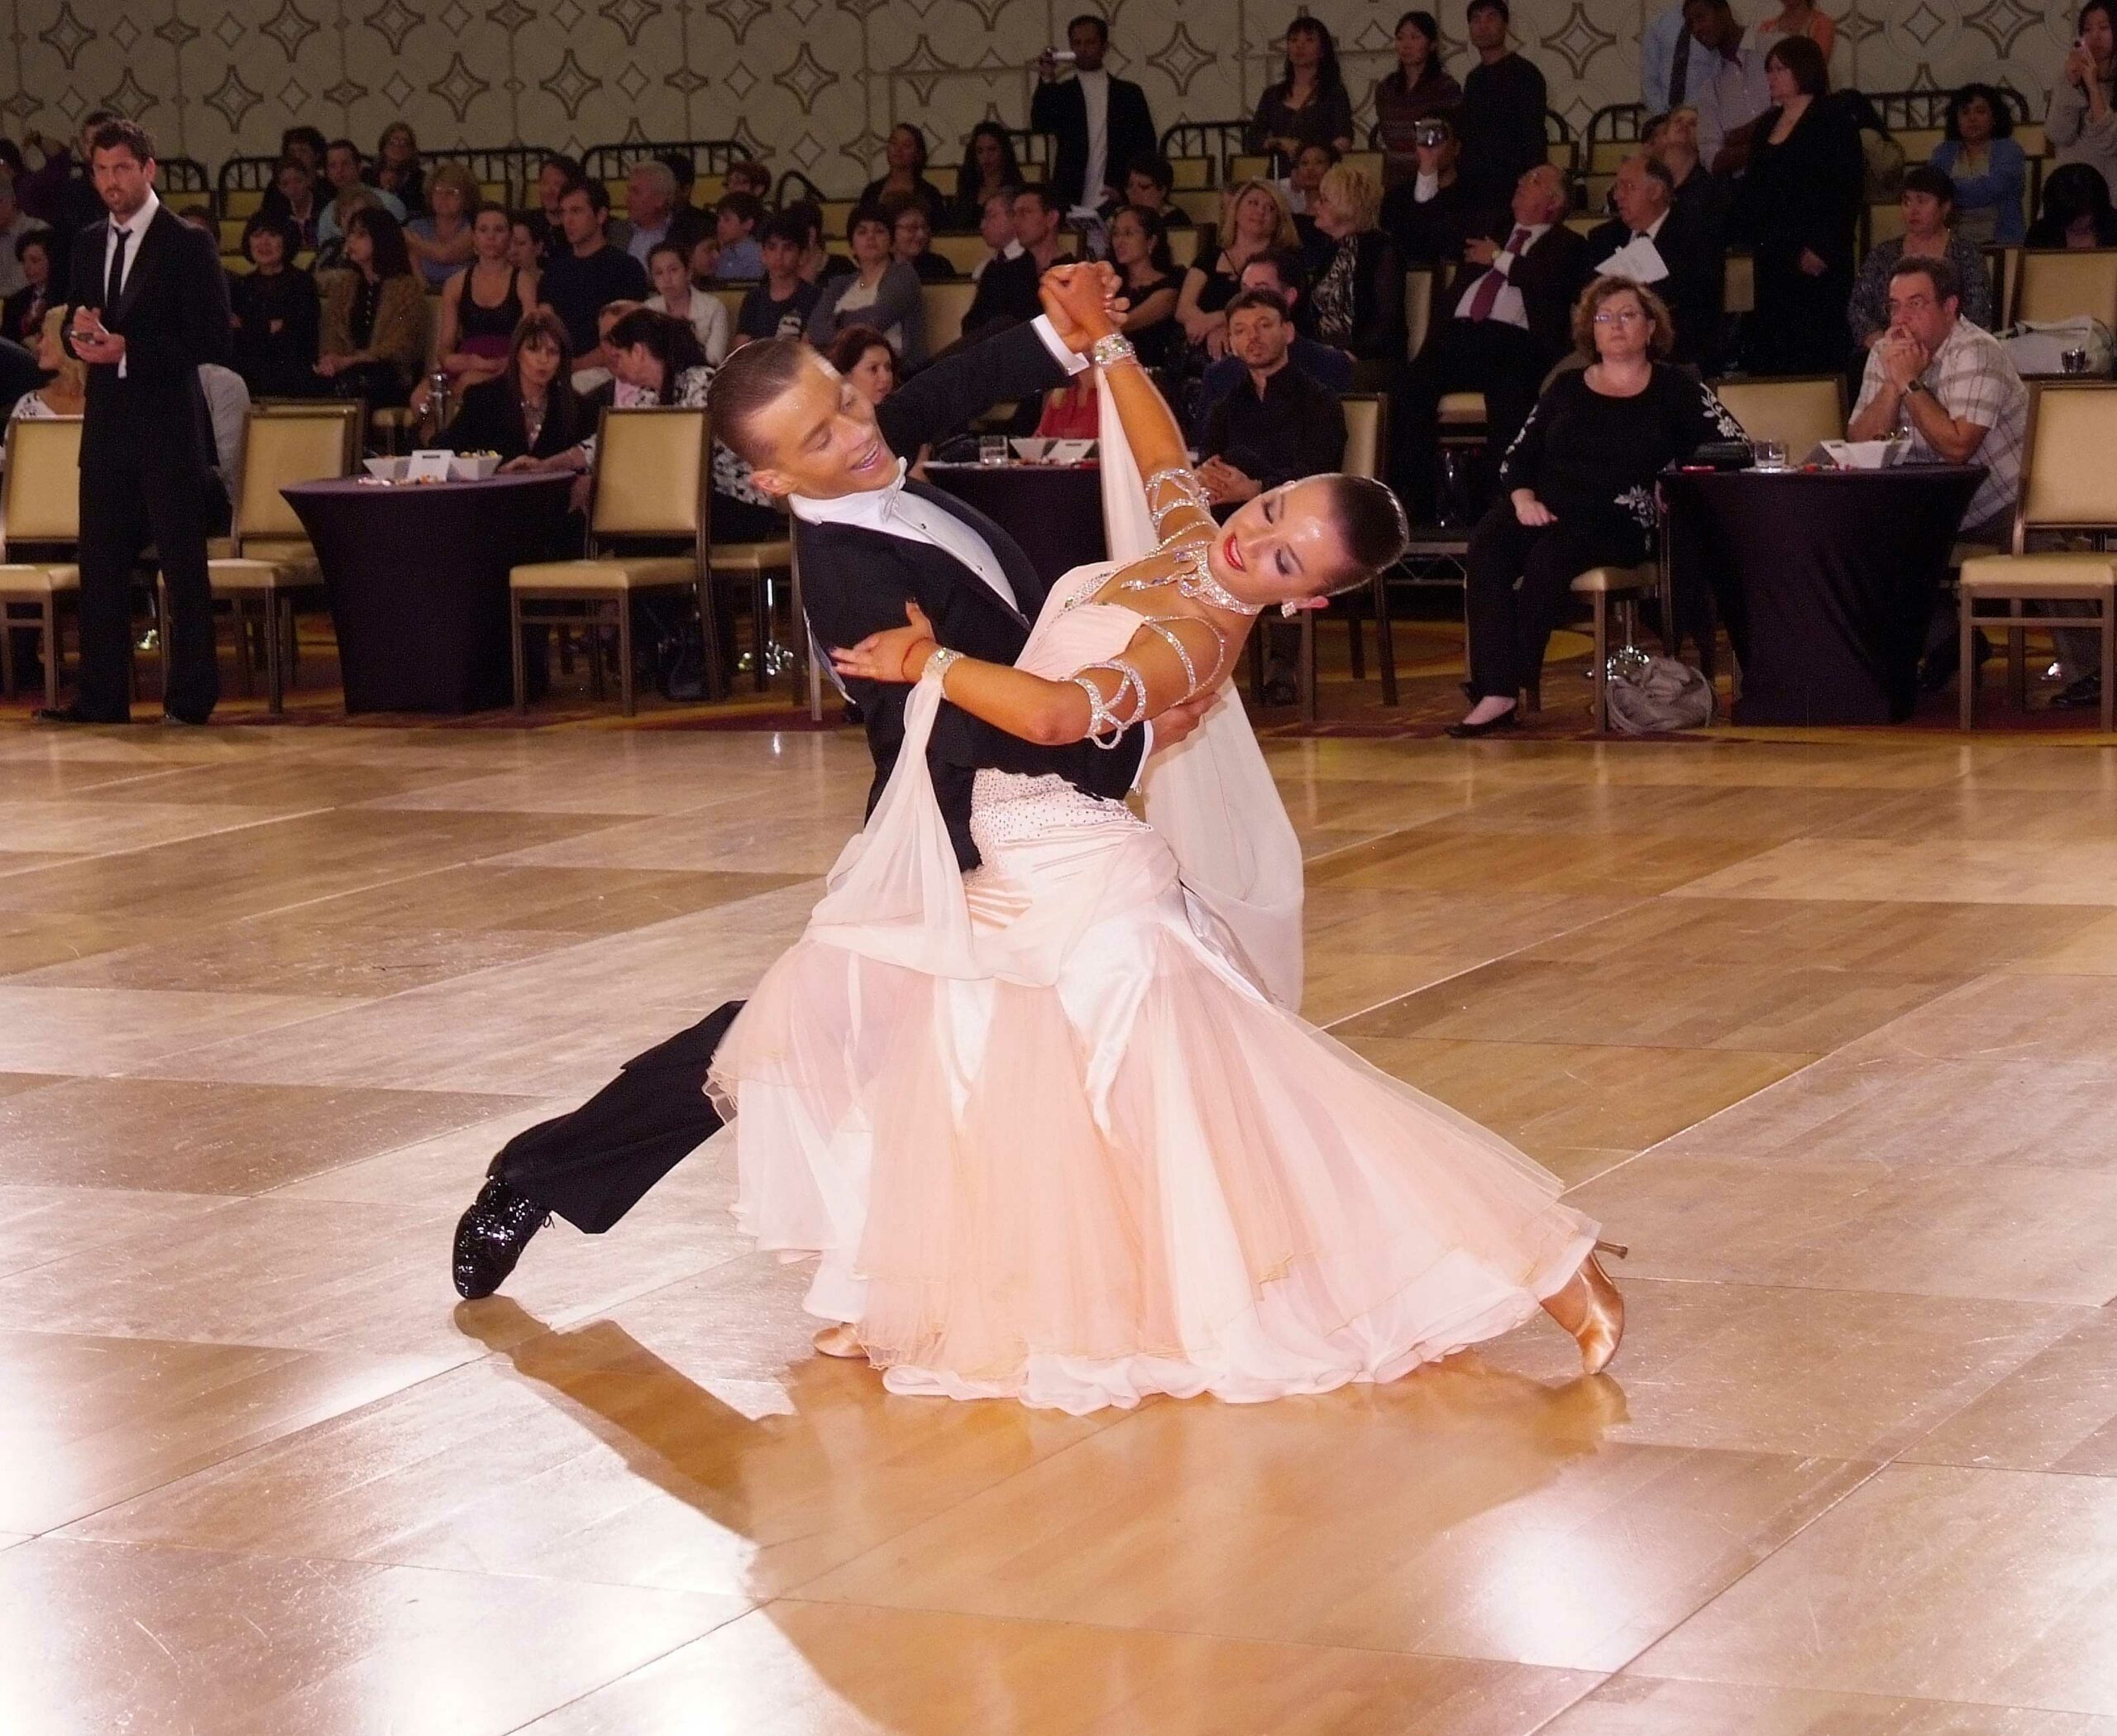 Youth Amateur Standard dancers Taras Savitskyy and Liya Podokshik